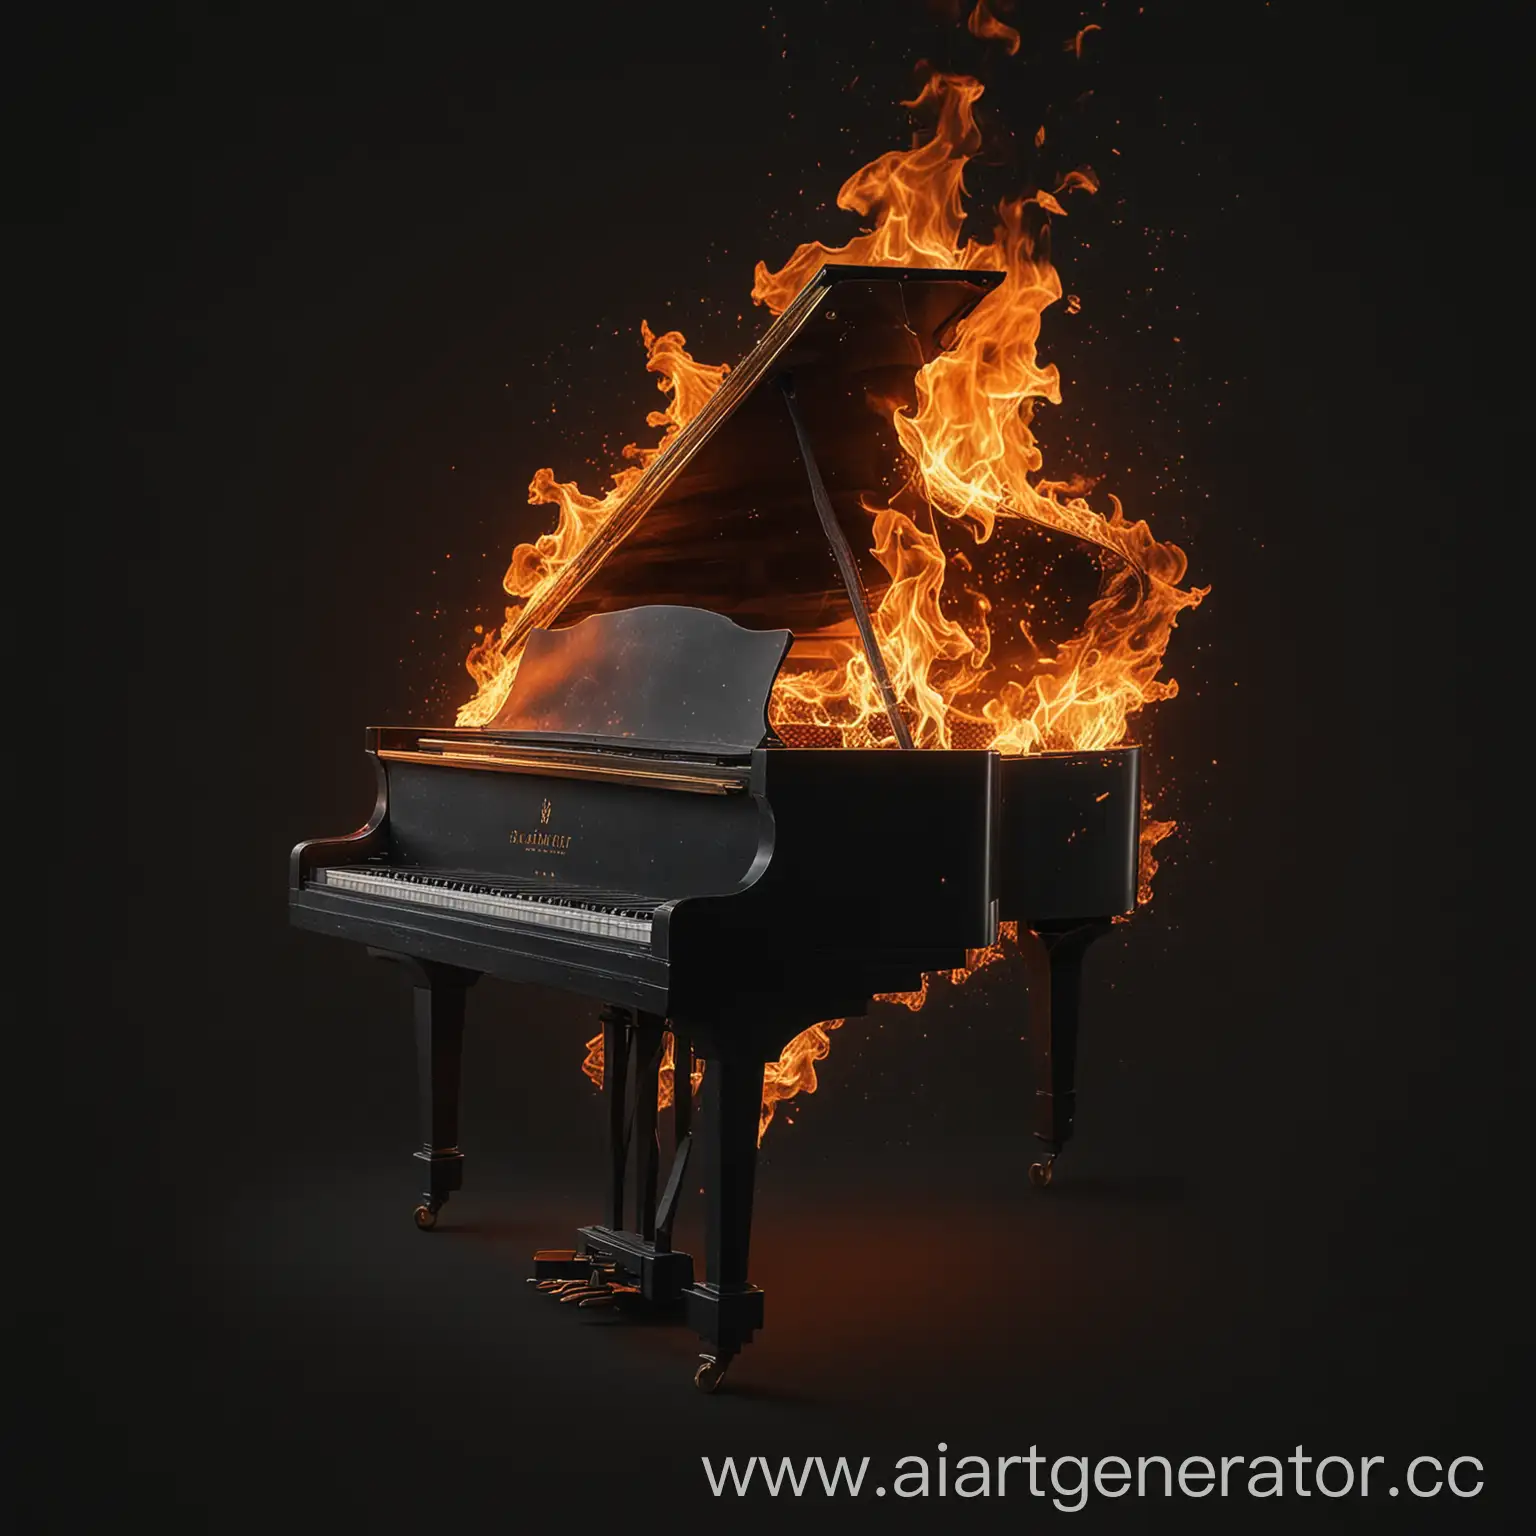 черный фон, по центру пианино в огне